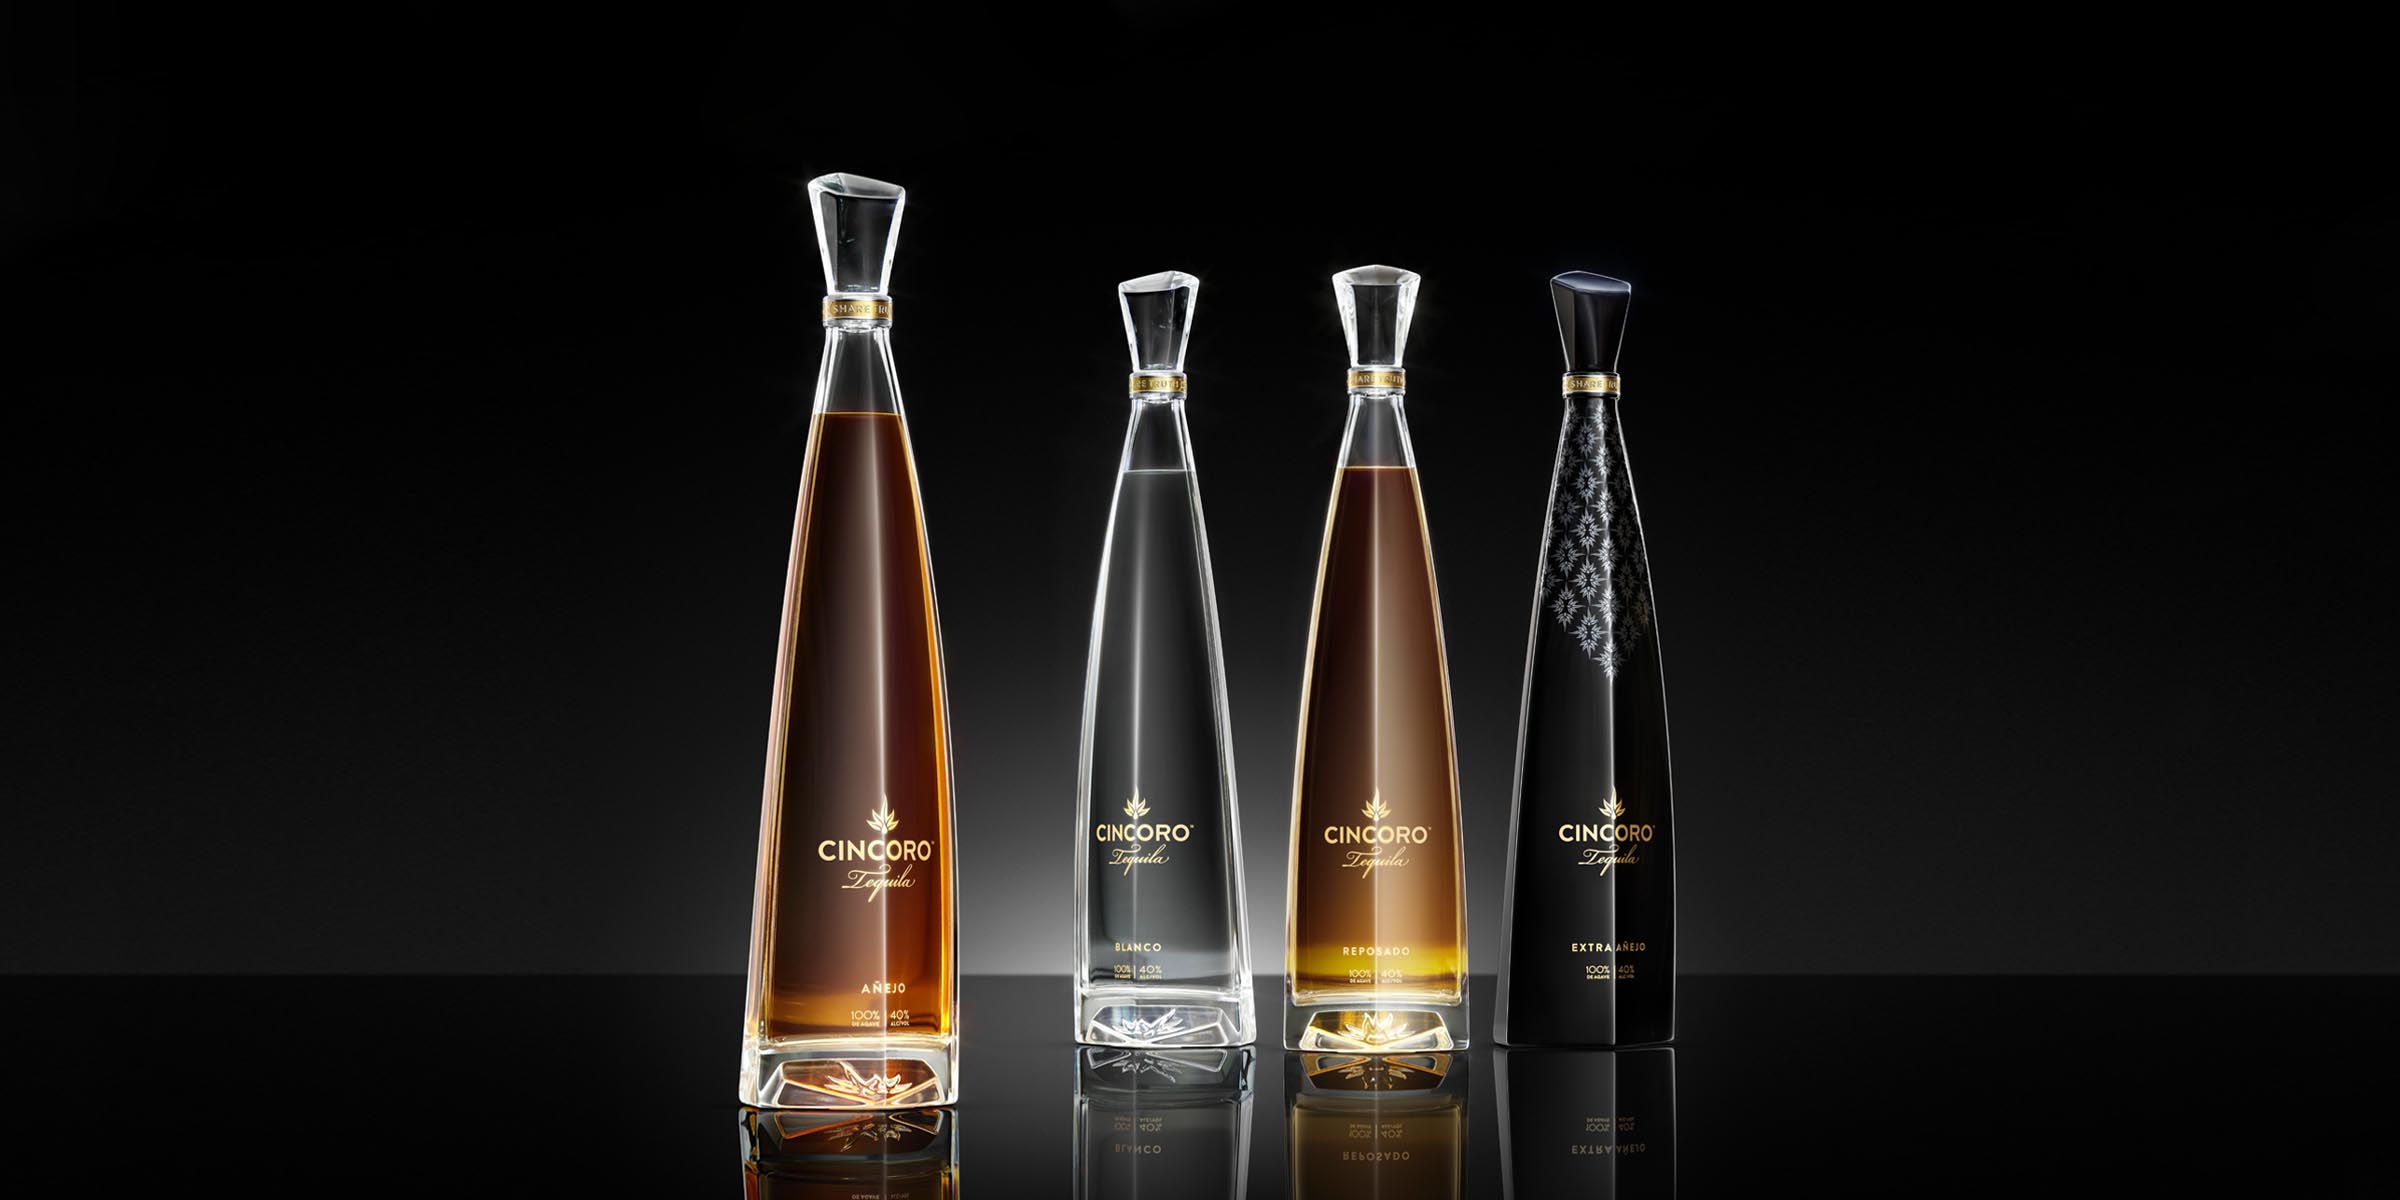 https://cdn.luxe.digital/media/20230119124313/cincoro-tequila-bottle-price-size-luxe-digital.jpg